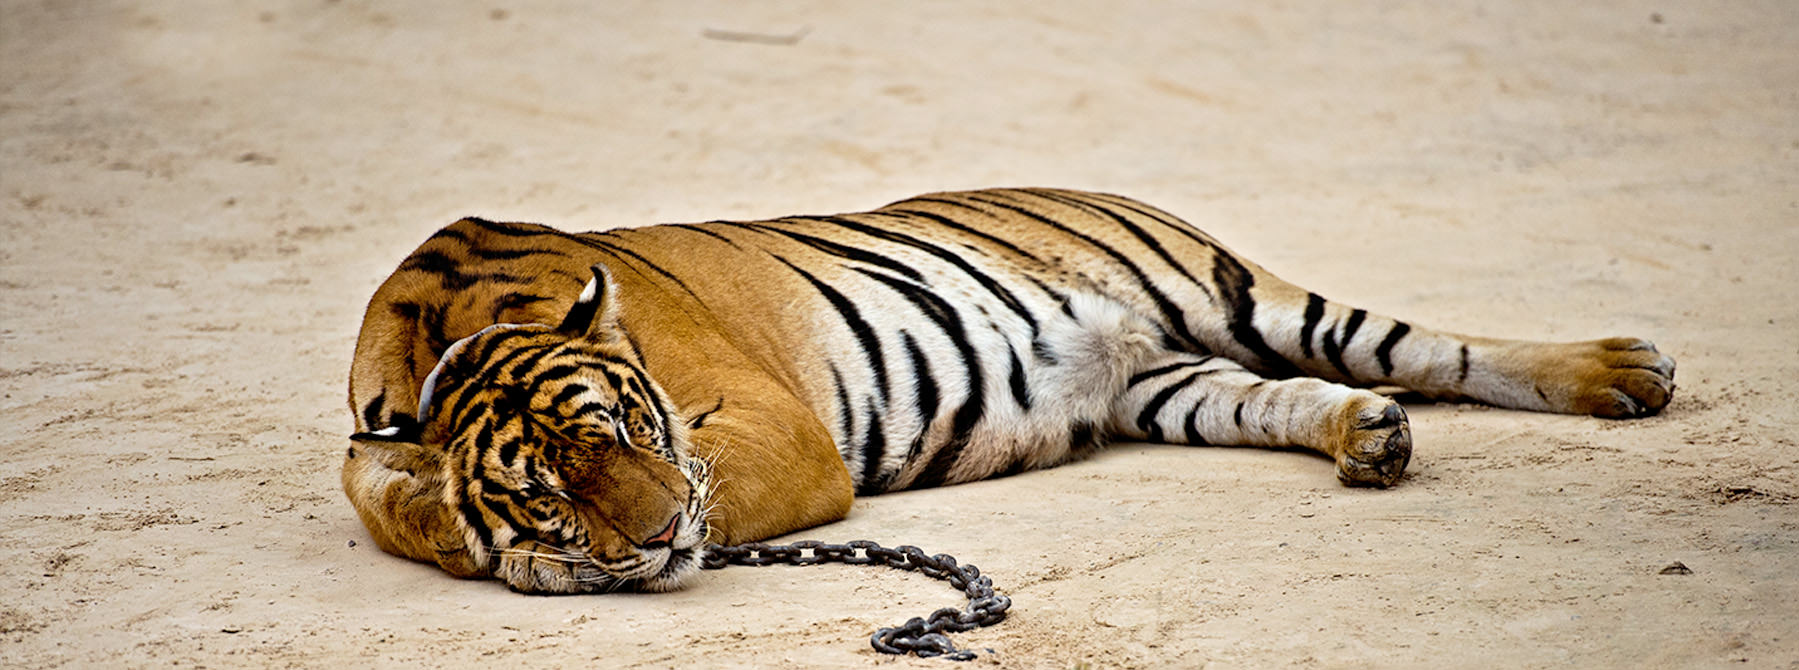 A captive Tiger Panthera tigris © James Morgan / WWF